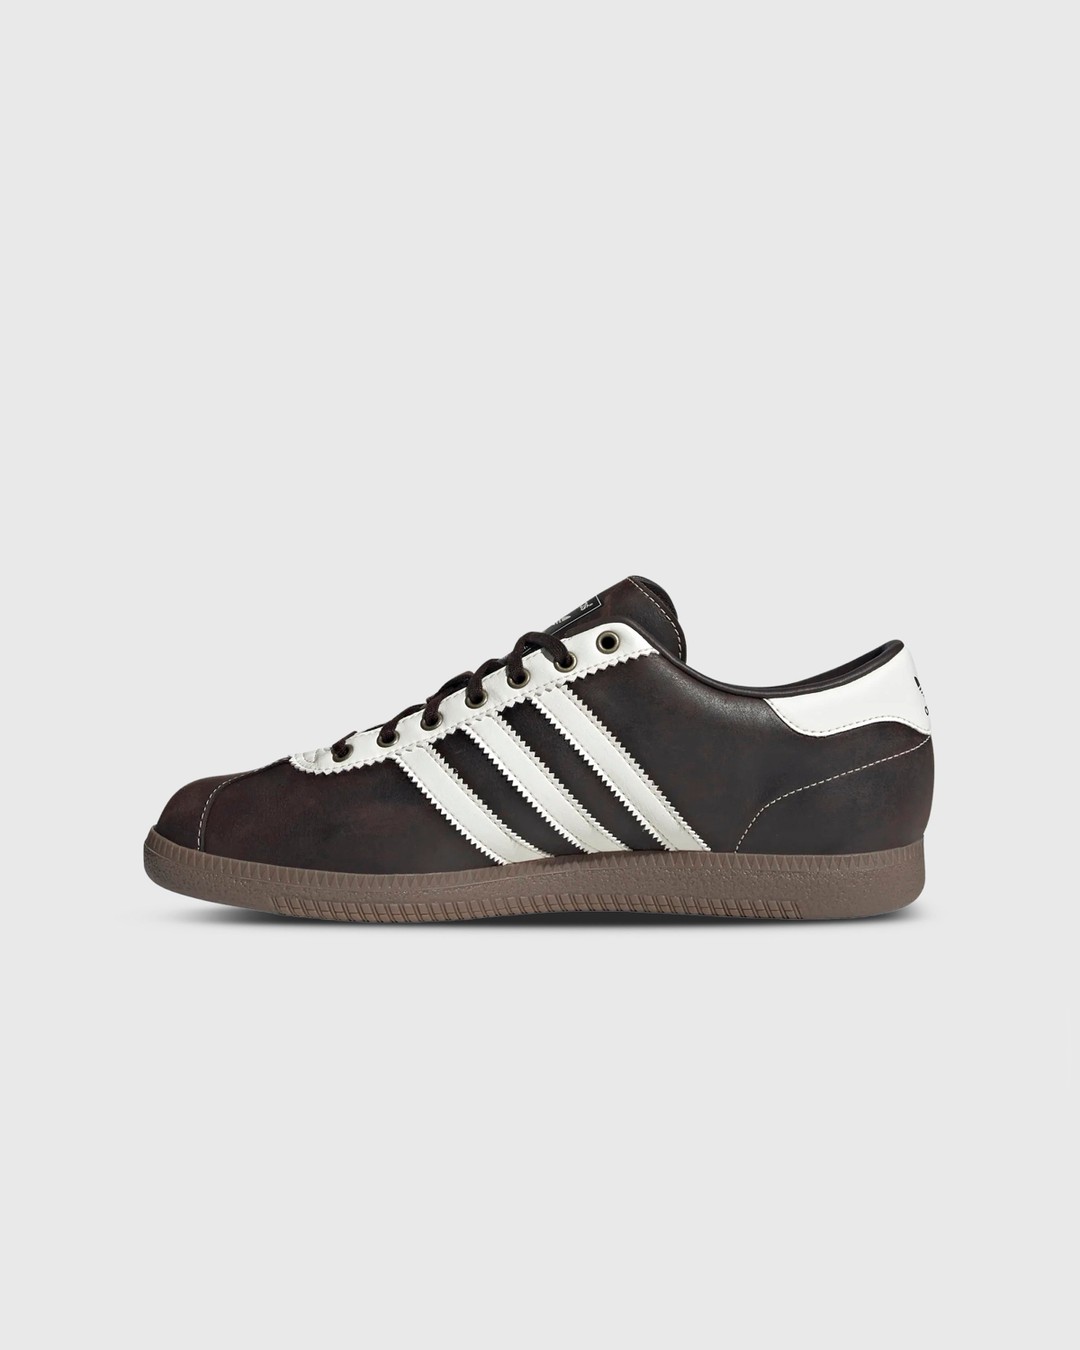 Adidas – Bern GTX Dark Brown | Highsnobiety Shop